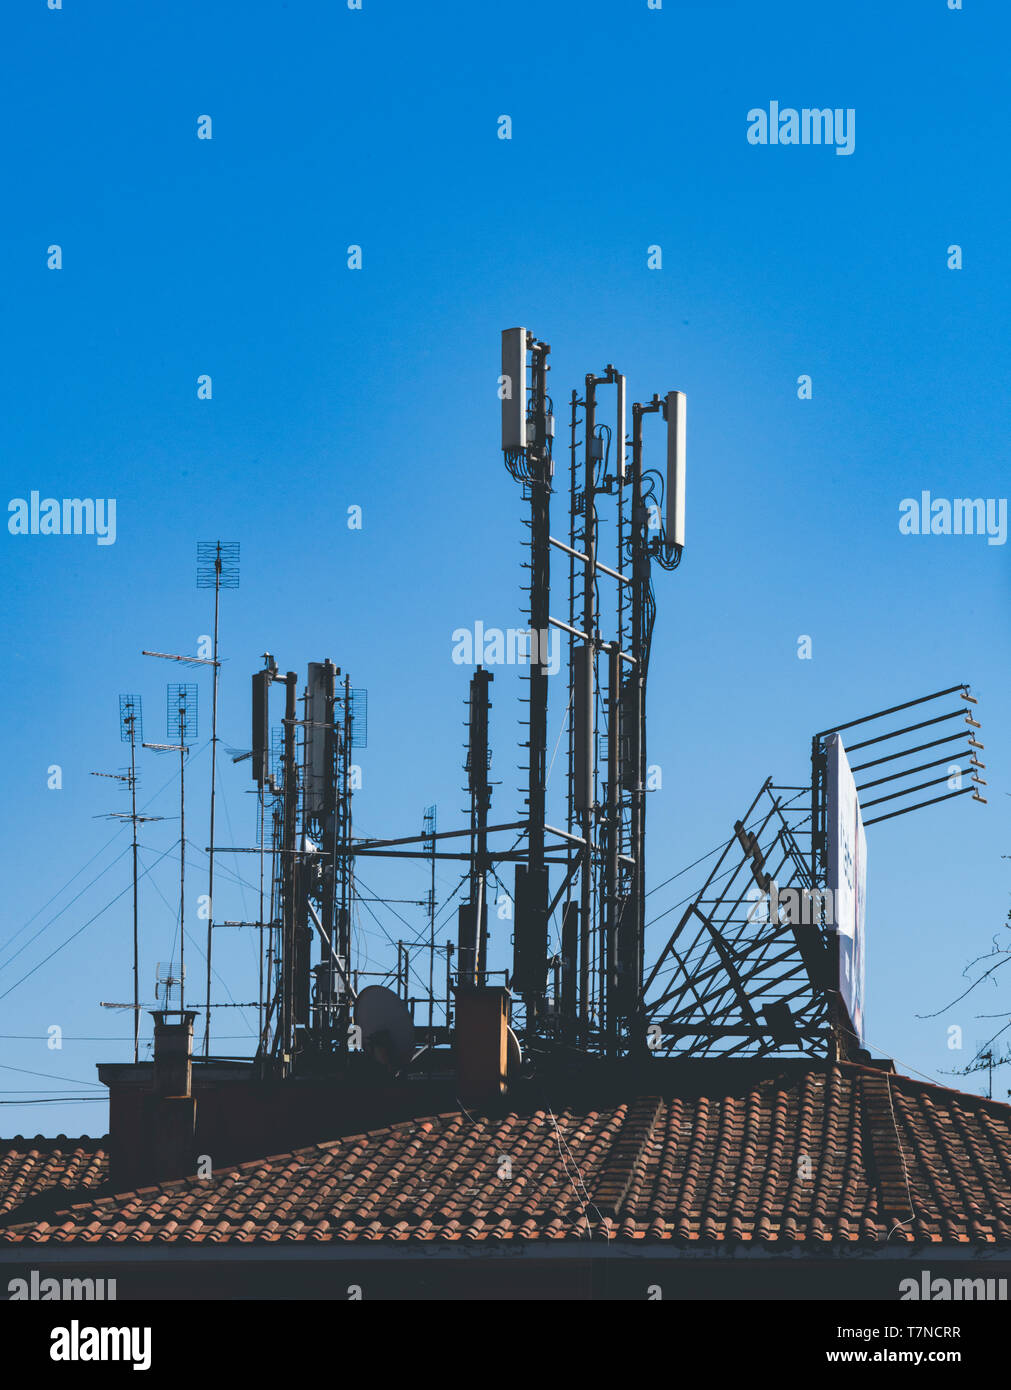 Plan large de différentes antennes antenne radio pour la télévision et le mobile de transmission sur roof tile building against blue sky Banque D'Images